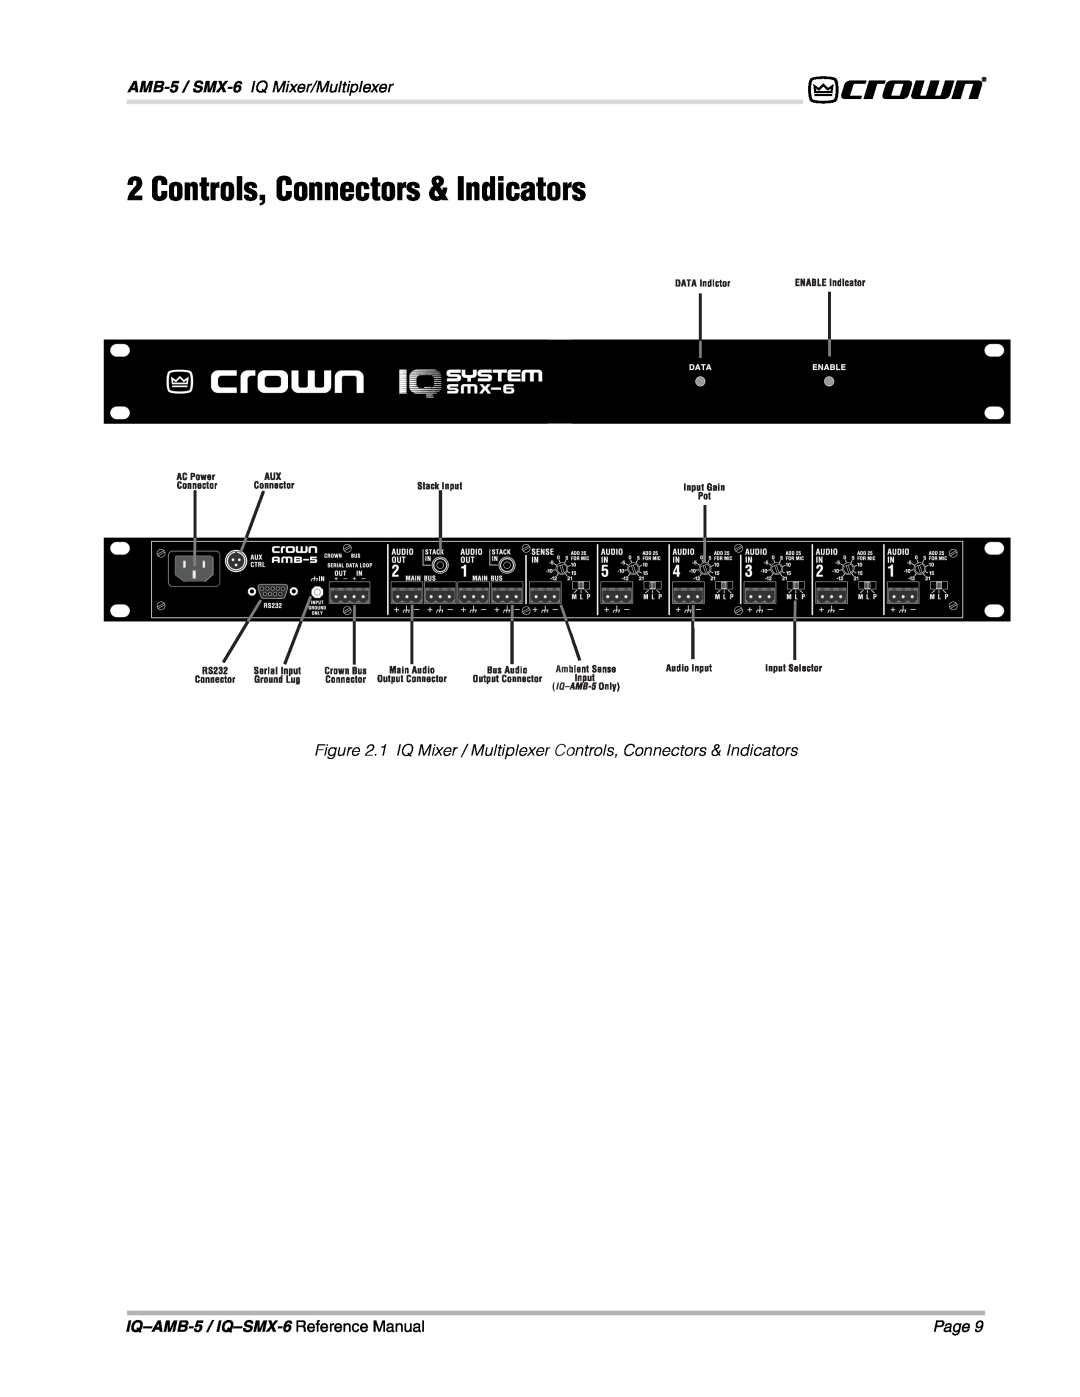 Crown IQAMB-5 Controls, Connectors & Indicators, AMB-5 / SMX-6 IQ Mixer/Multiplexer, IQ–AMB-5 / IQ–SMX-6 Reference Manual 